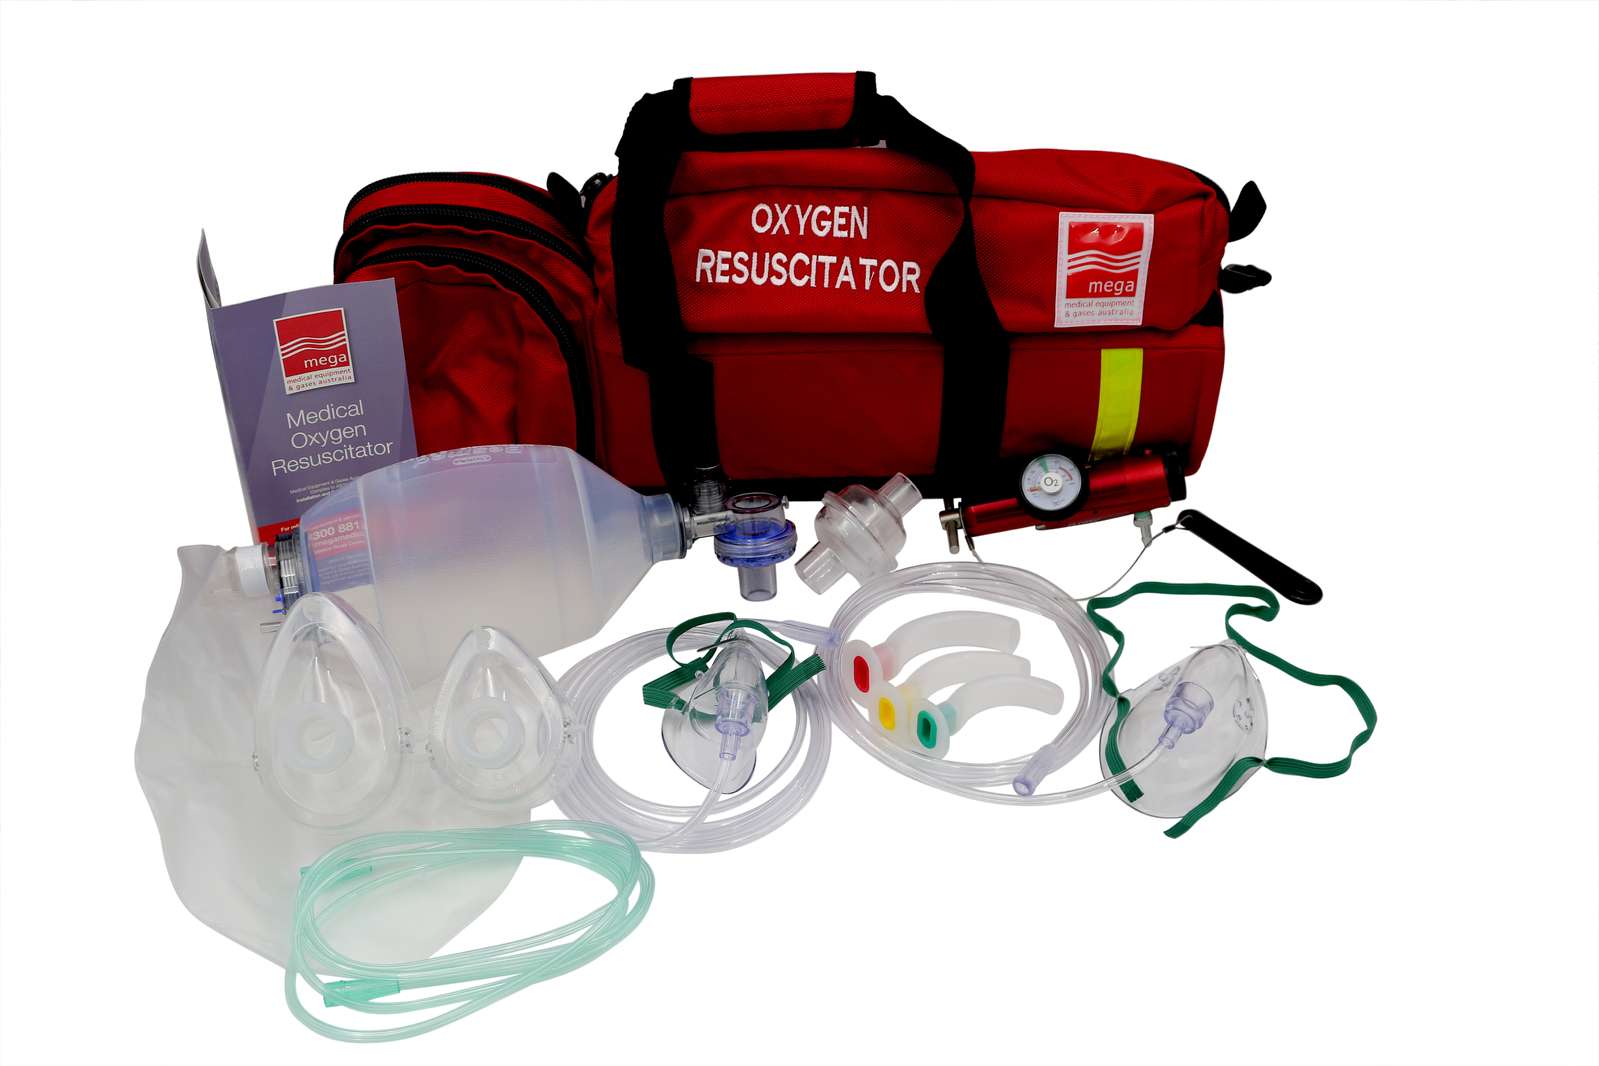 Oxygen and Resuscitaiton Kits